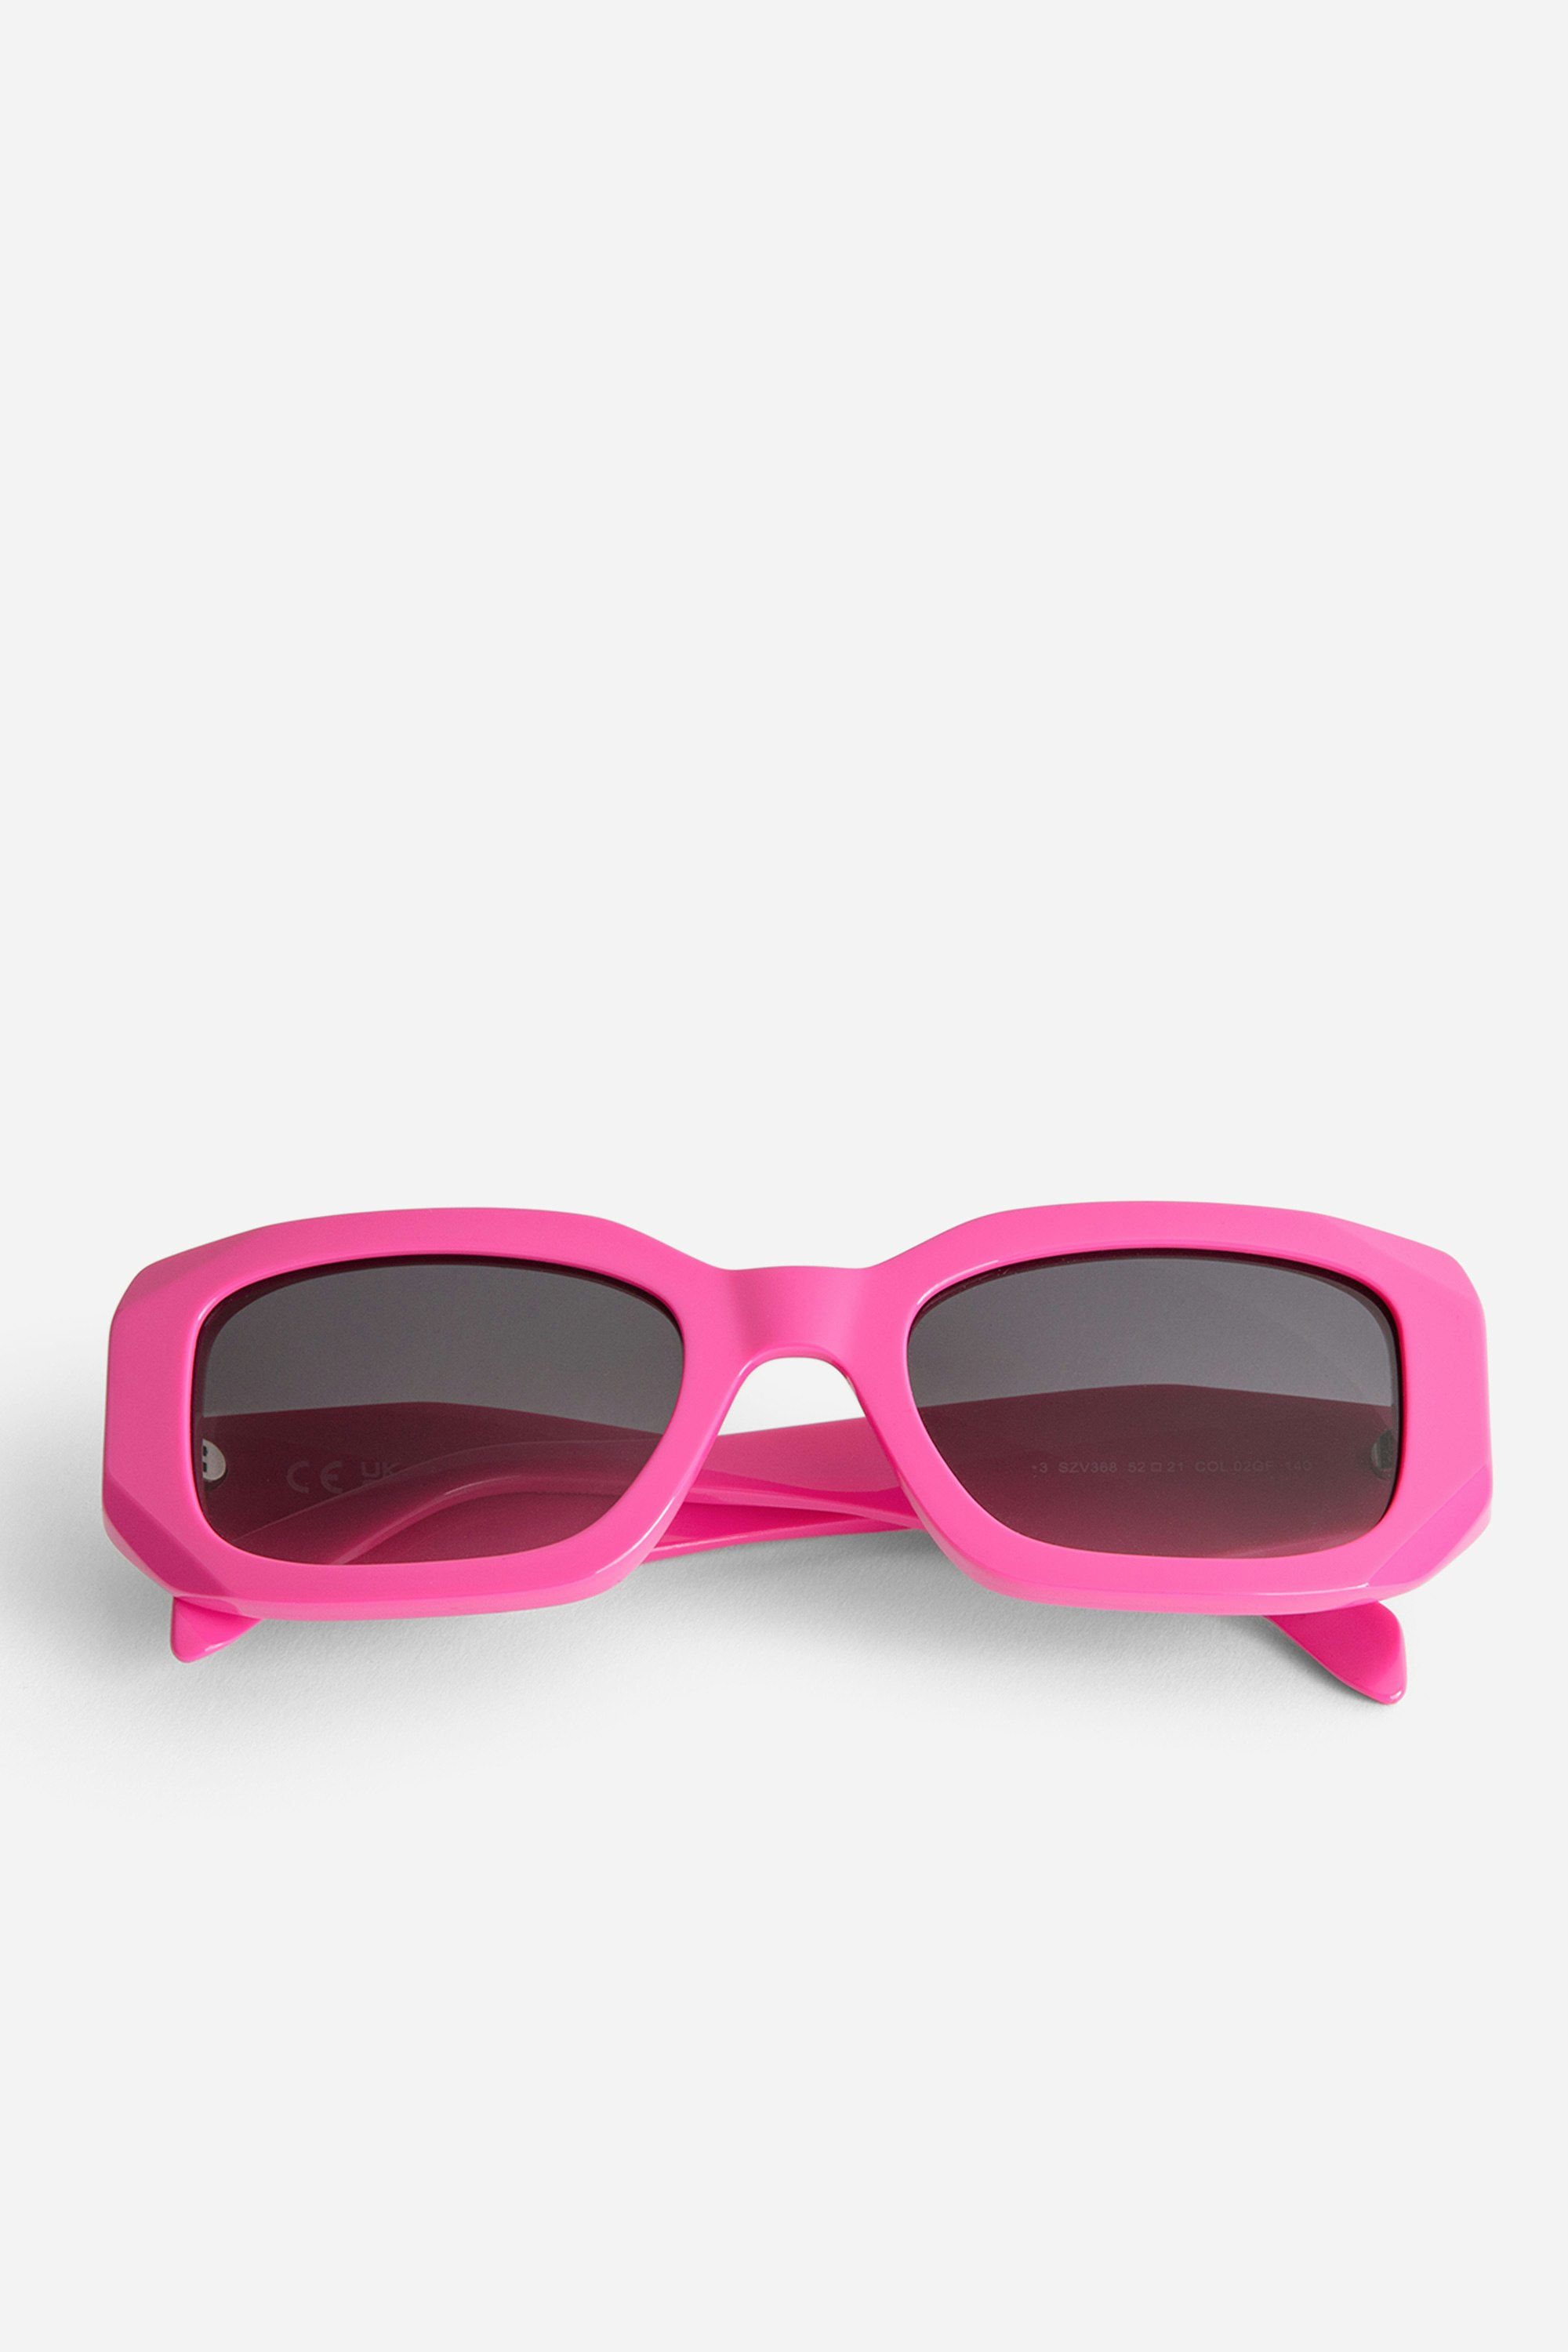 Gafas de sol ZV23H3 - Gafas de sol unisex rectangulares de color rosa con patillas desestructuradas con alas.